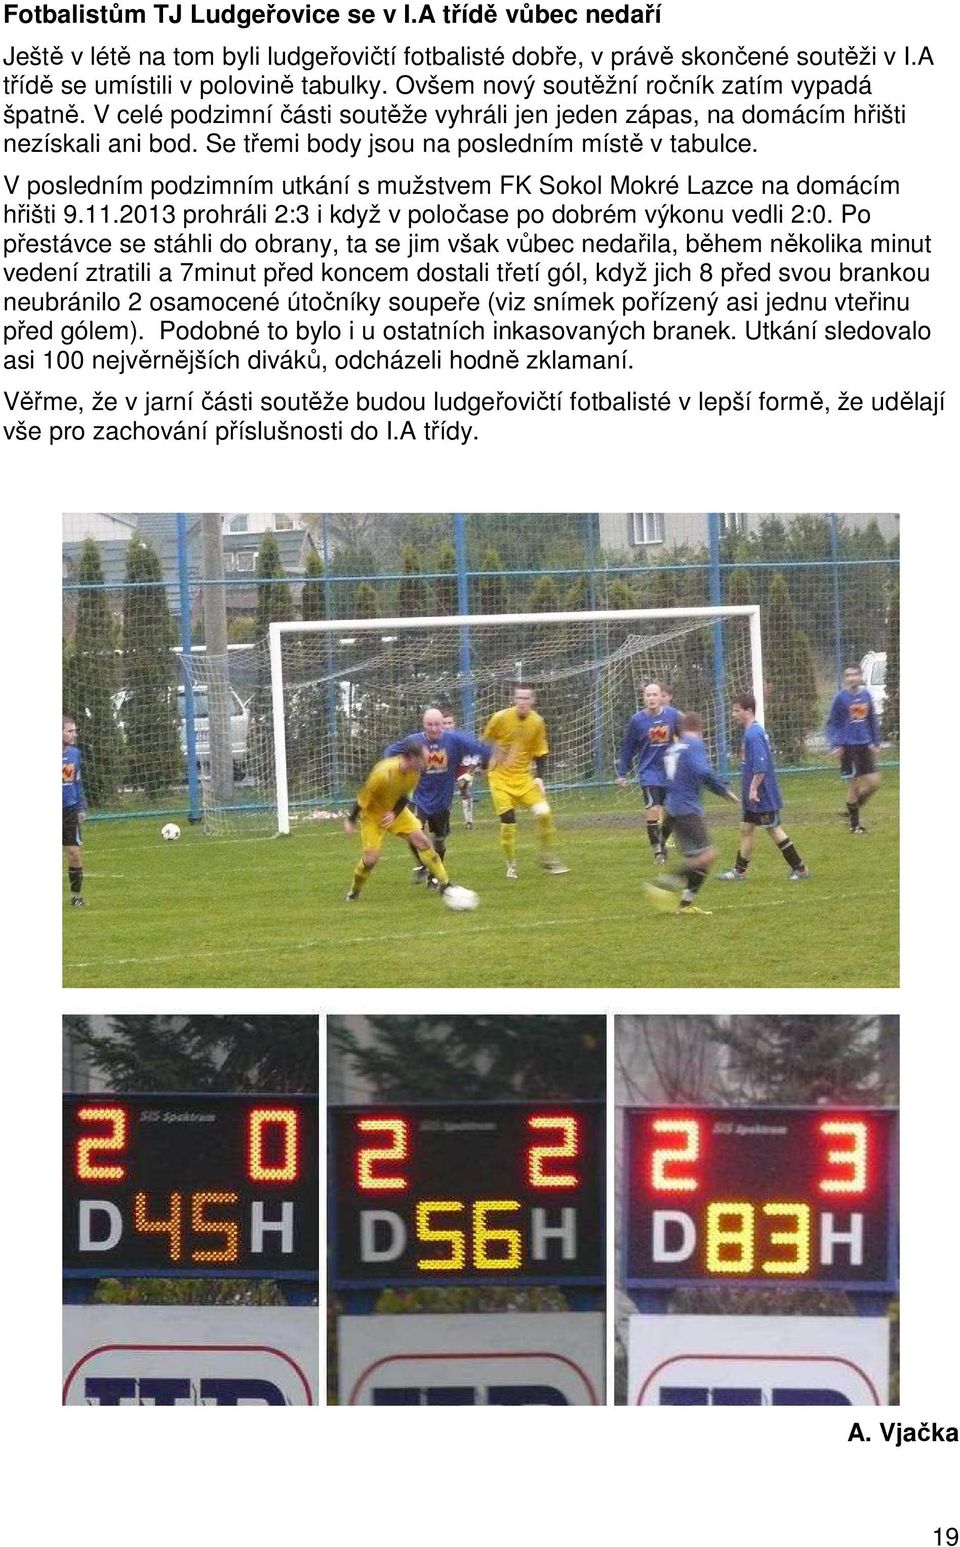 V posledním podzimním utkání s mužstvem FK Sokol Mokré Lazce na domácím hřišti 9.11.2013 prohráli 2:3 i když v poločase po dobrém výkonu vedli 2:0.